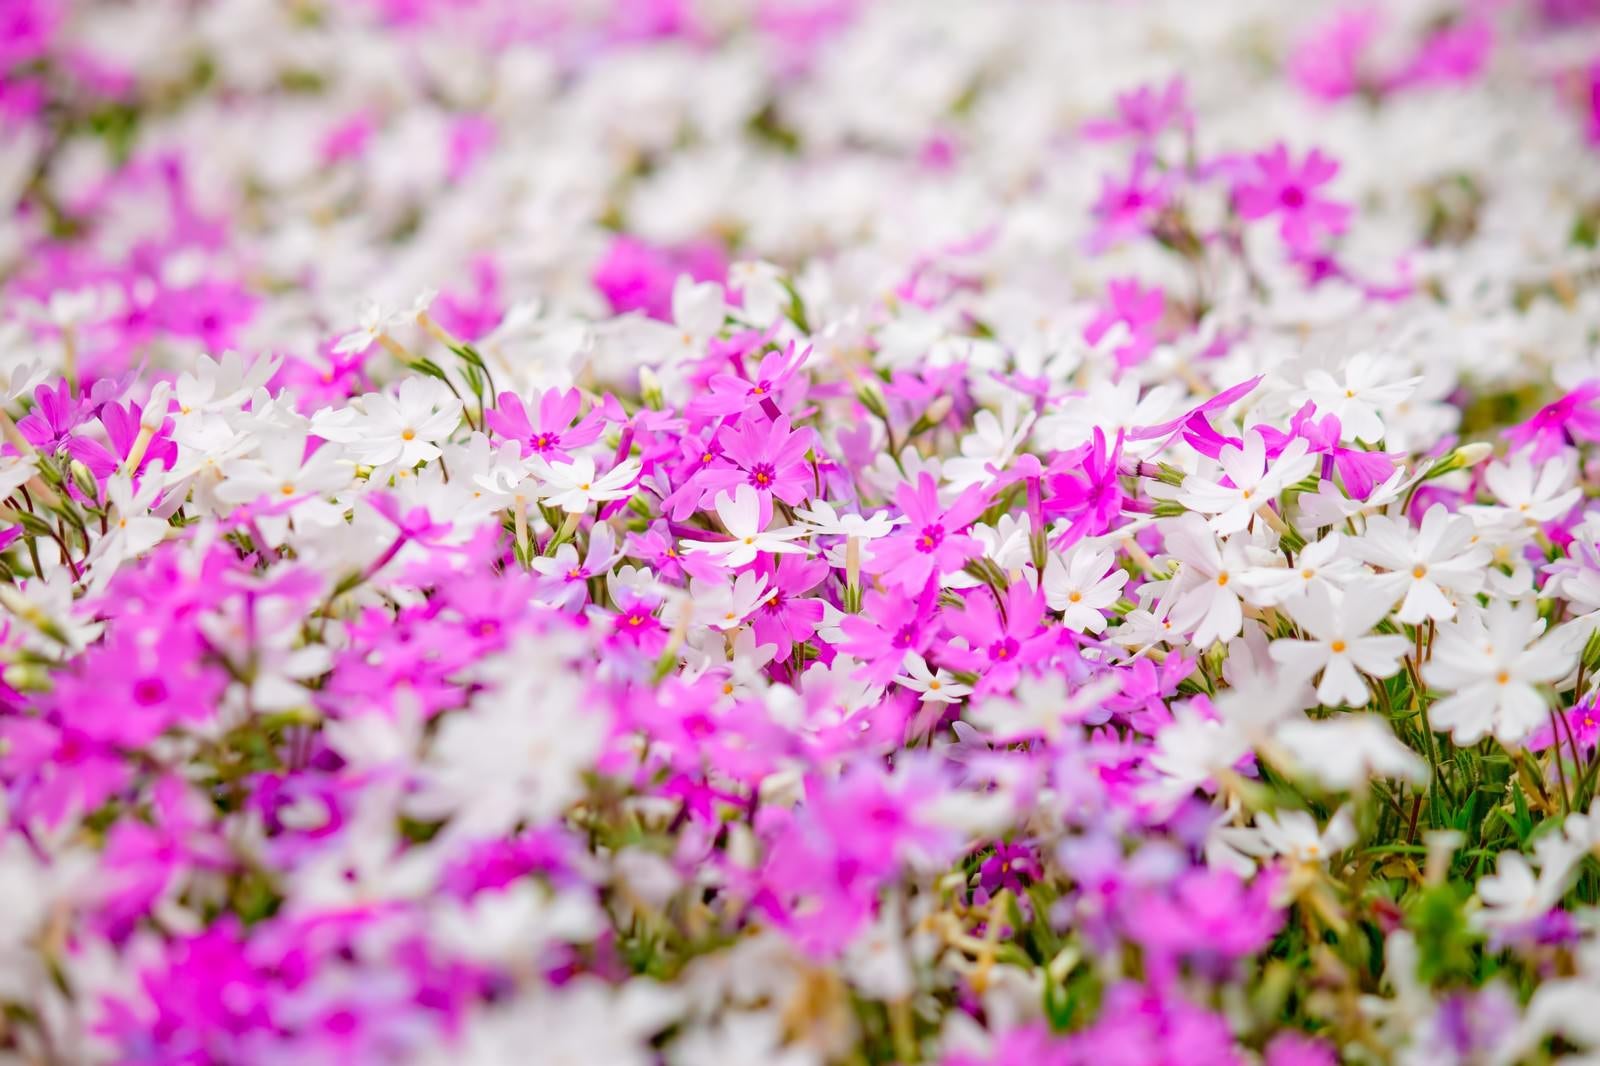 「一面に咲くピンクと白い花」の写真